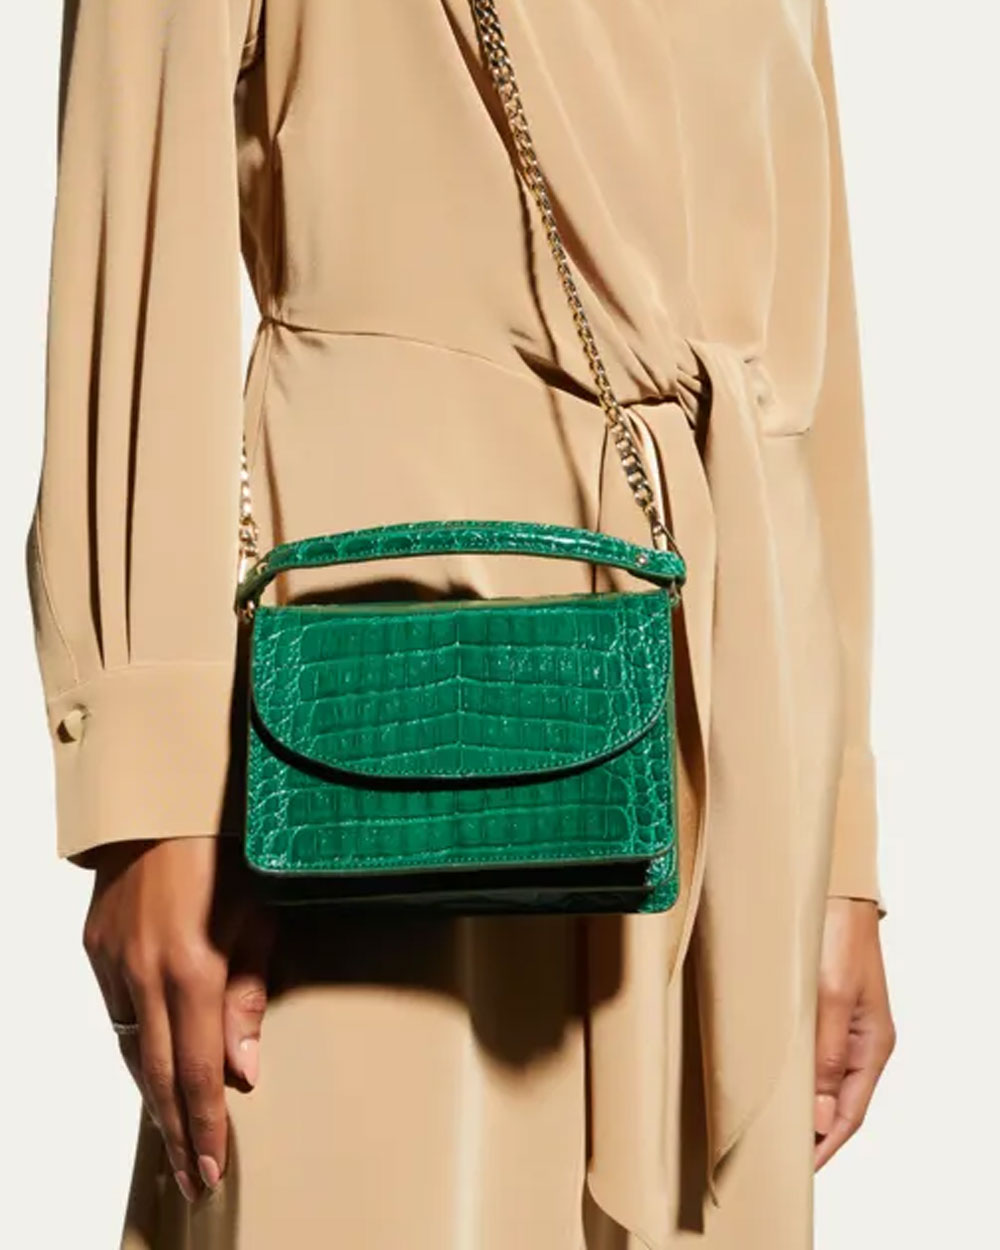 Valencia Crocodile Top-Handle Bag in Emerald